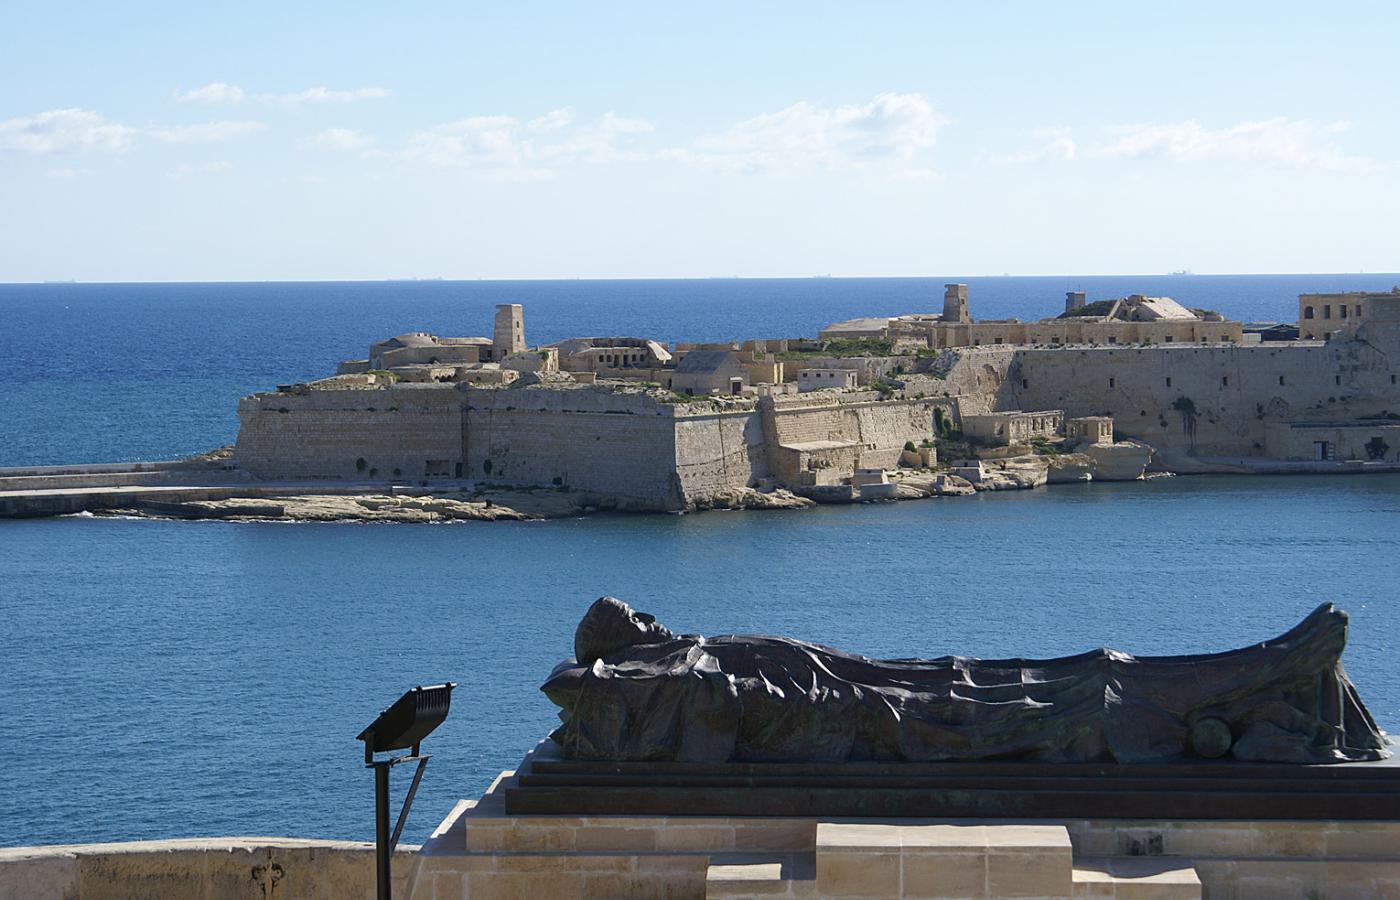 Maltańczycy są wyjątkowo dumni ze swojej burzliwej historii. Na każdym kroku można natknąć się na pamiątki po bohaterach wielkich kampanii. Na zdjęciu - pomnik ku czci poległych w czasie obrony wyspy w latach 1940-1942.